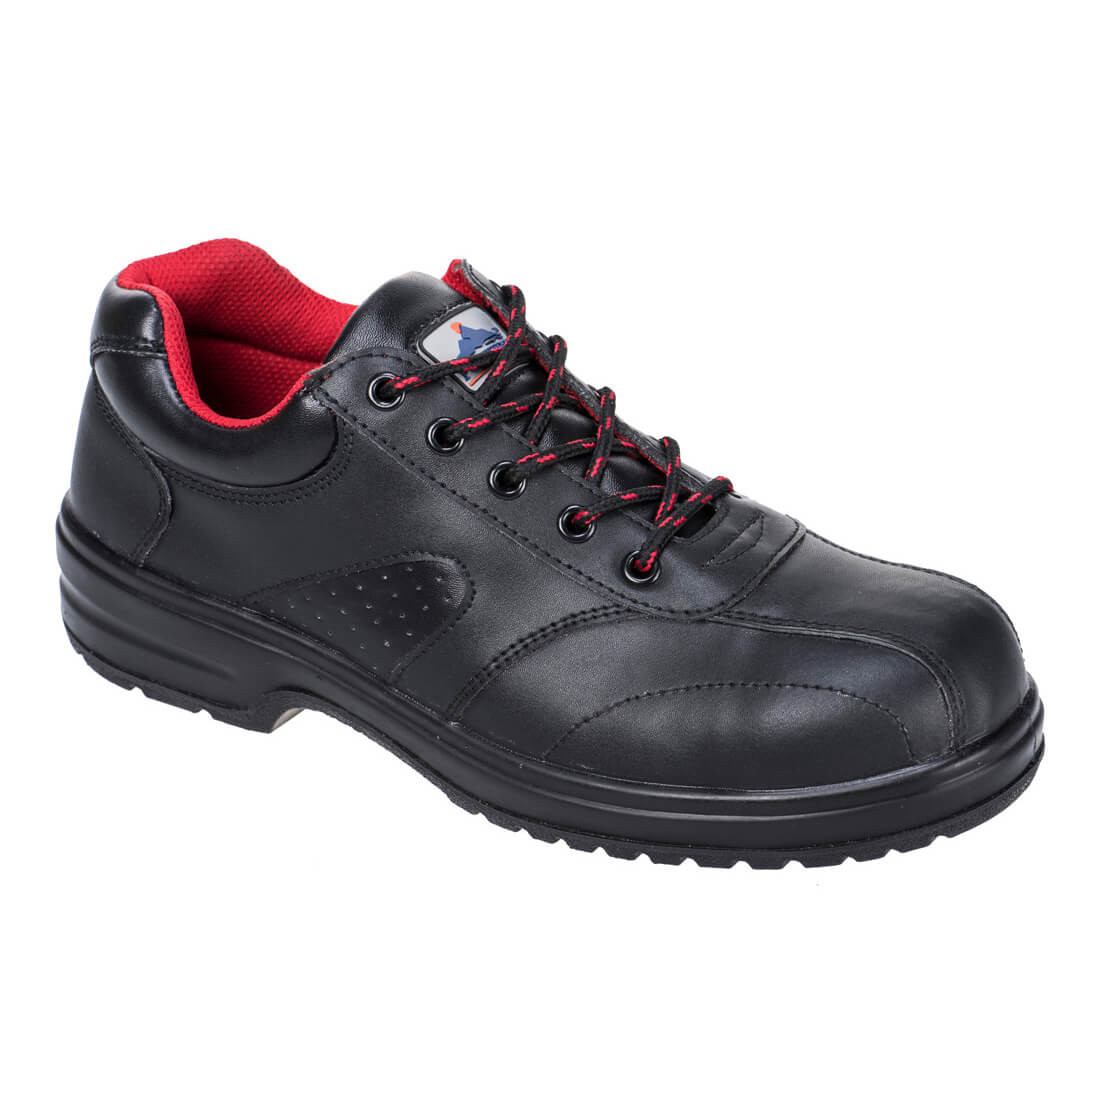 Zapato Steelite™ Ladies S1 - Calzado de protección